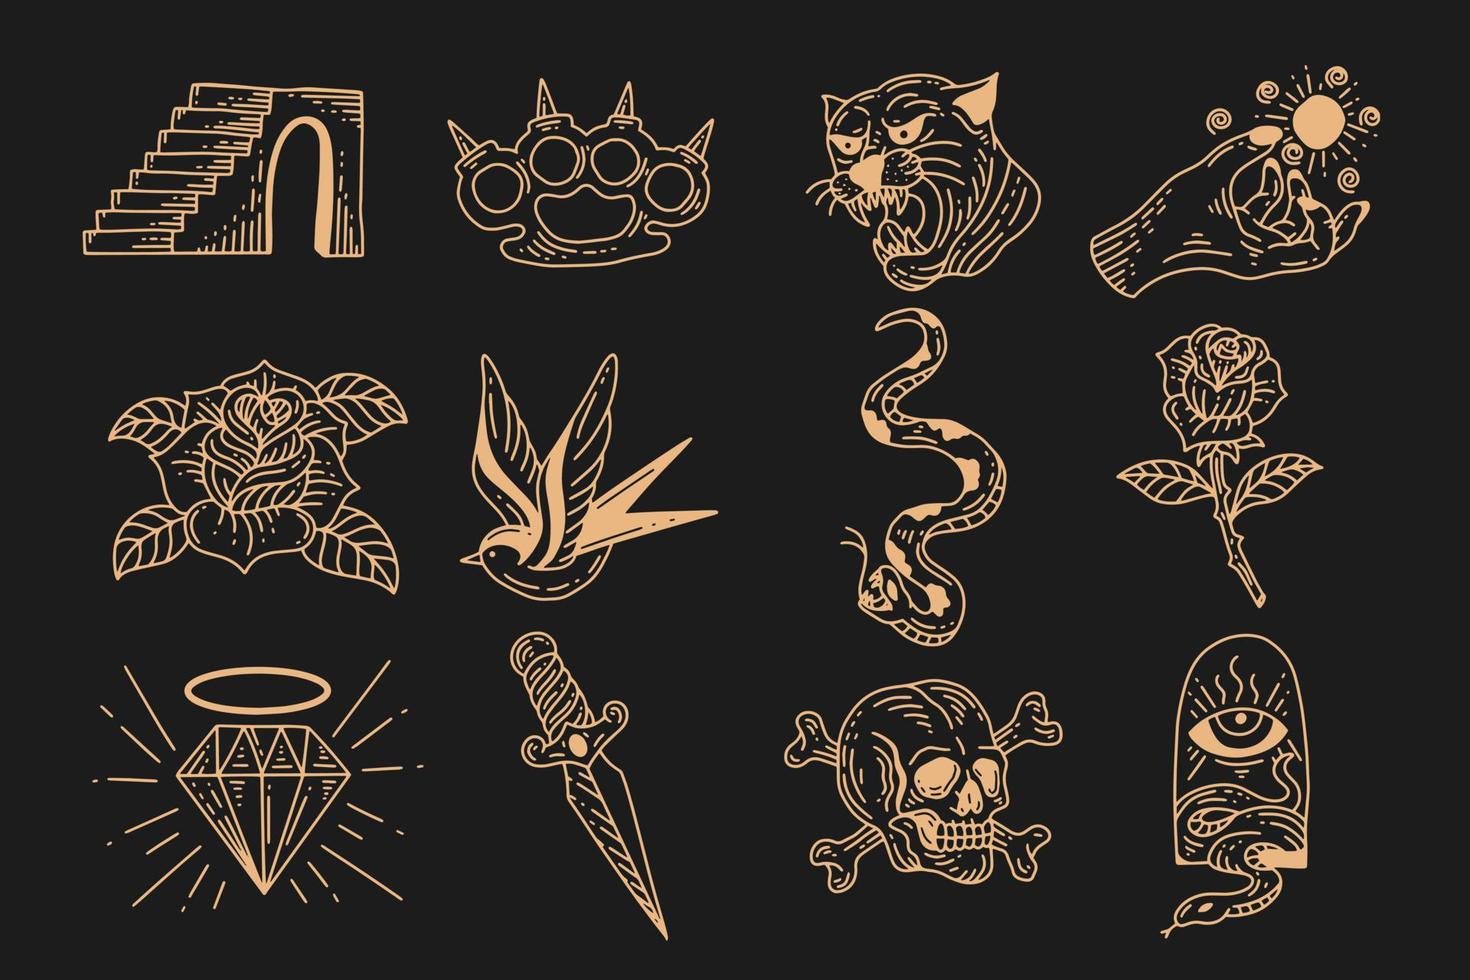 conjunto coleção místico clipart celestial símbolo espaço doodle elementos mágicos esotéricos ilustração vintage vetor